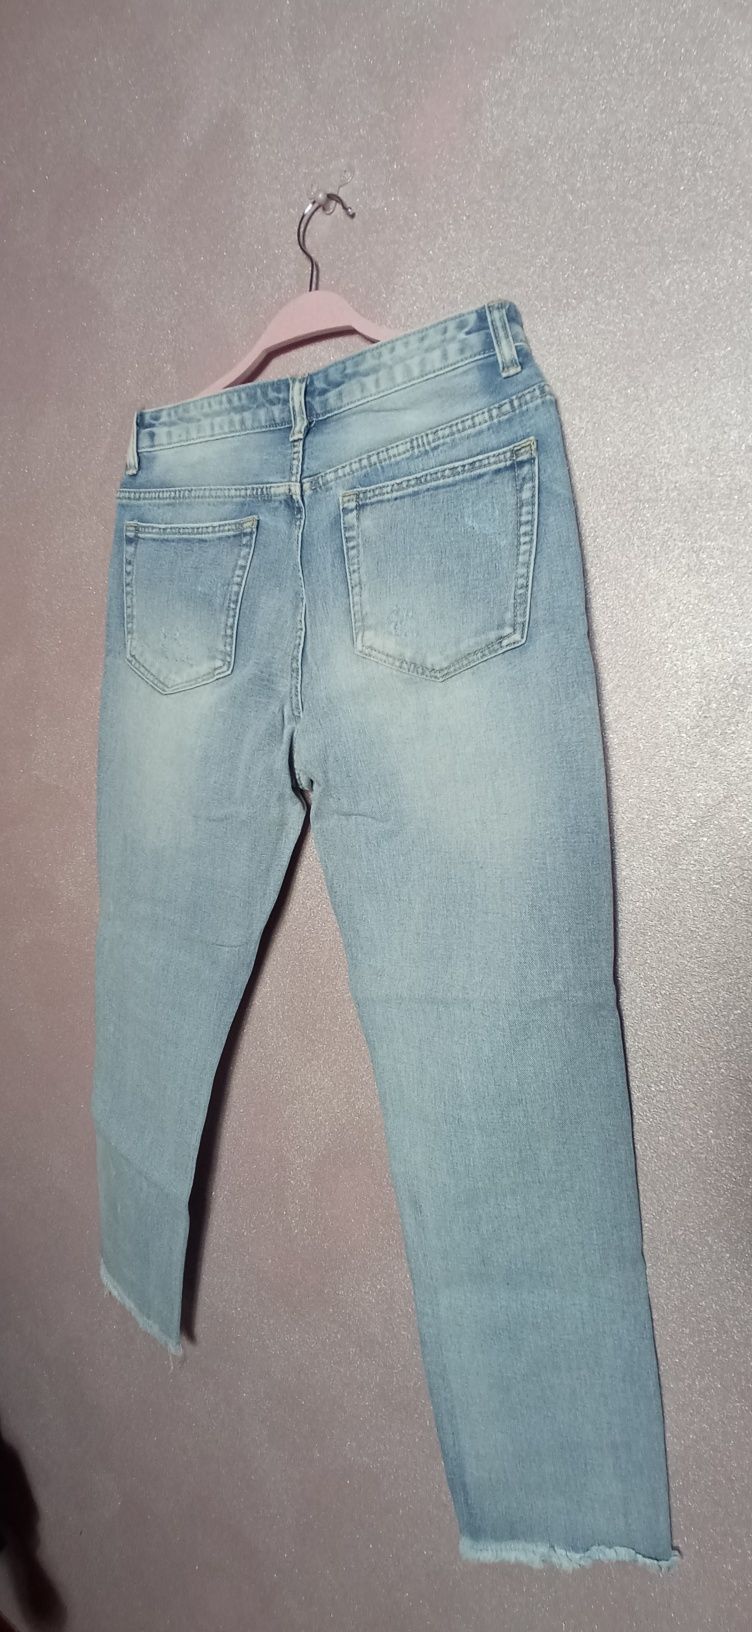 Spodnie jeans nowe porwane M 7/8 - 78% Cotton